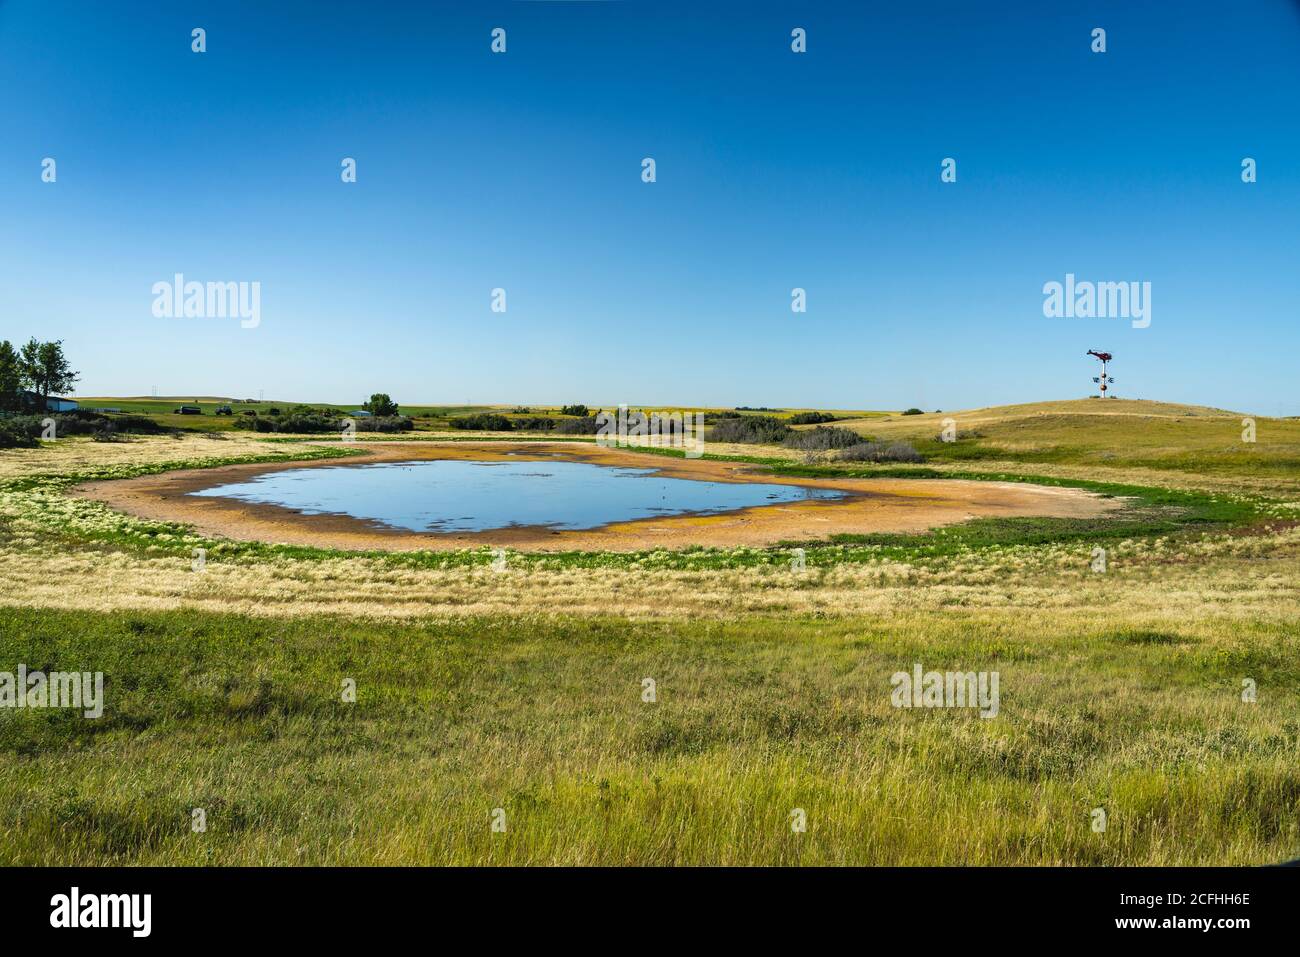 A small prairie pond in rural Saskatchewan, Canada. Stock Photo